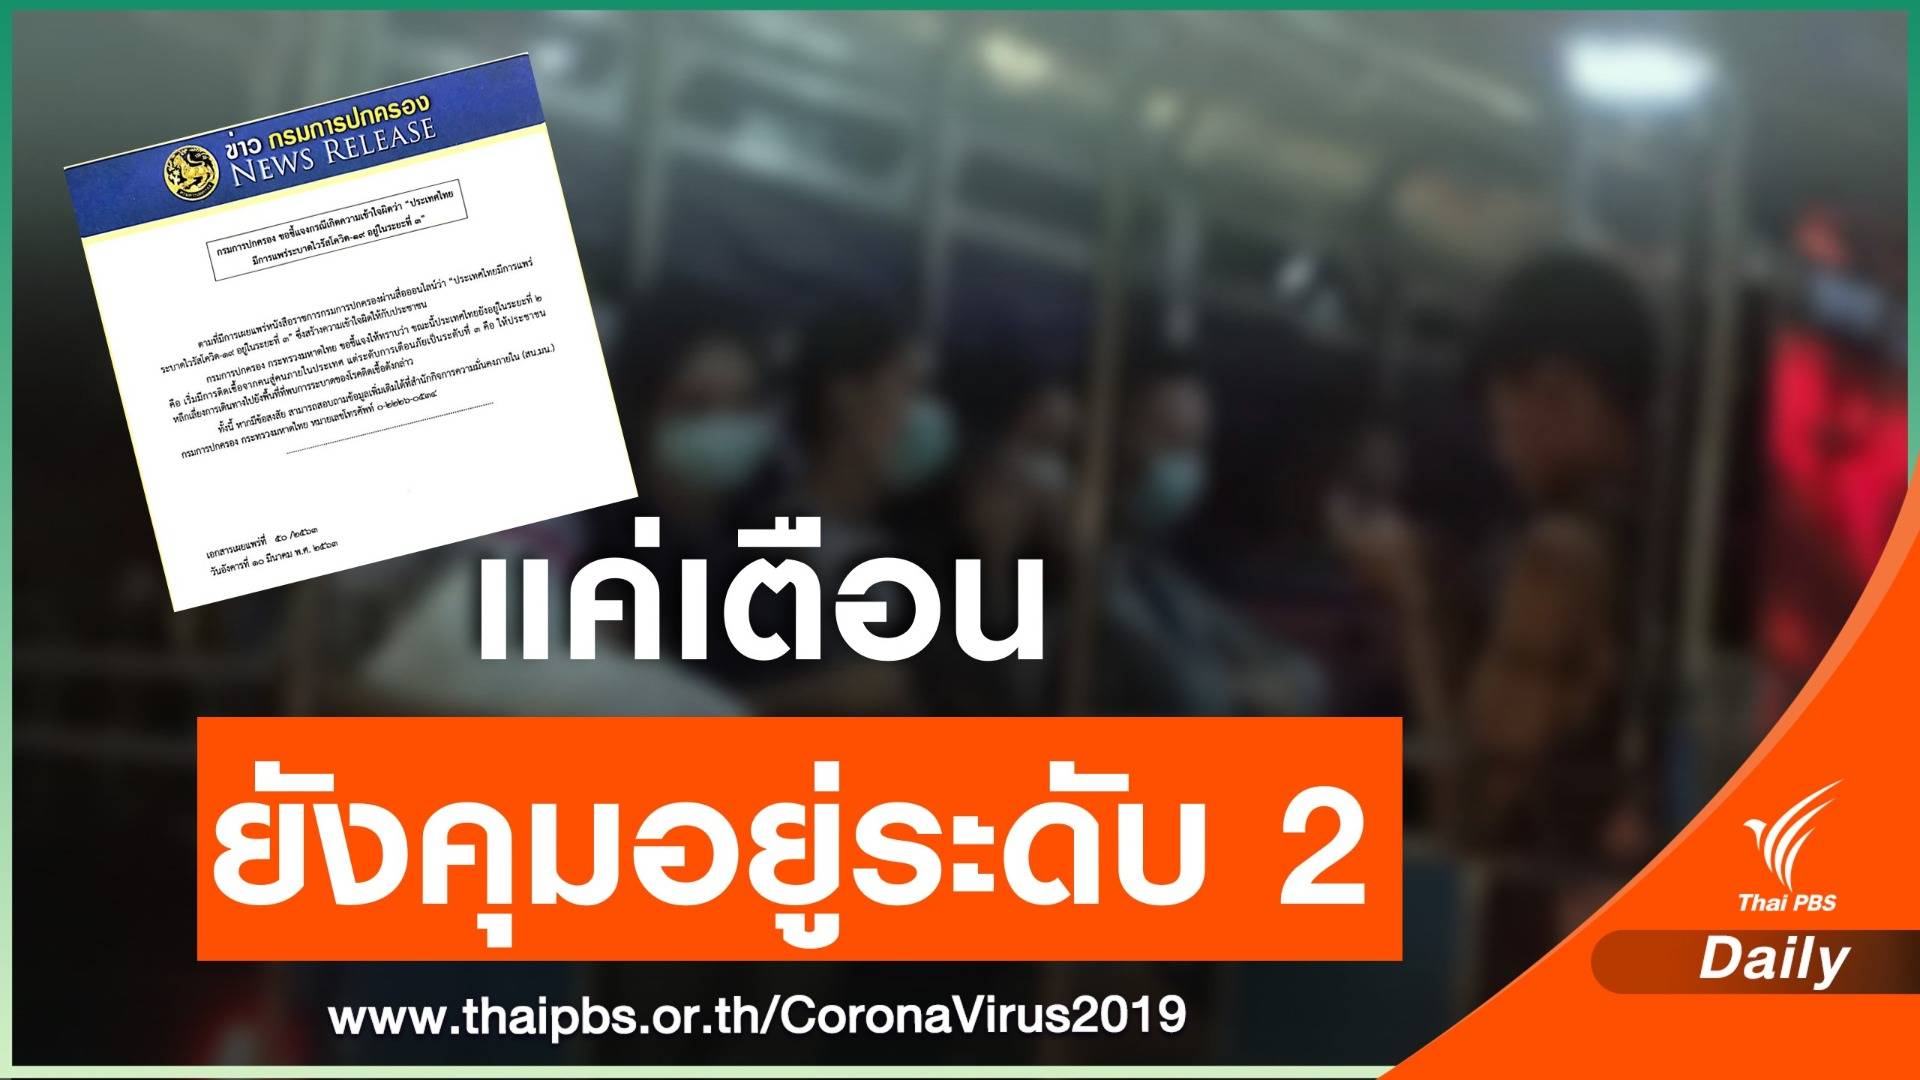 "กรมการปกครอง" สยบข่าวลือ  COVID-19 ในไทยยังอยู่แค่ระดับ 2 